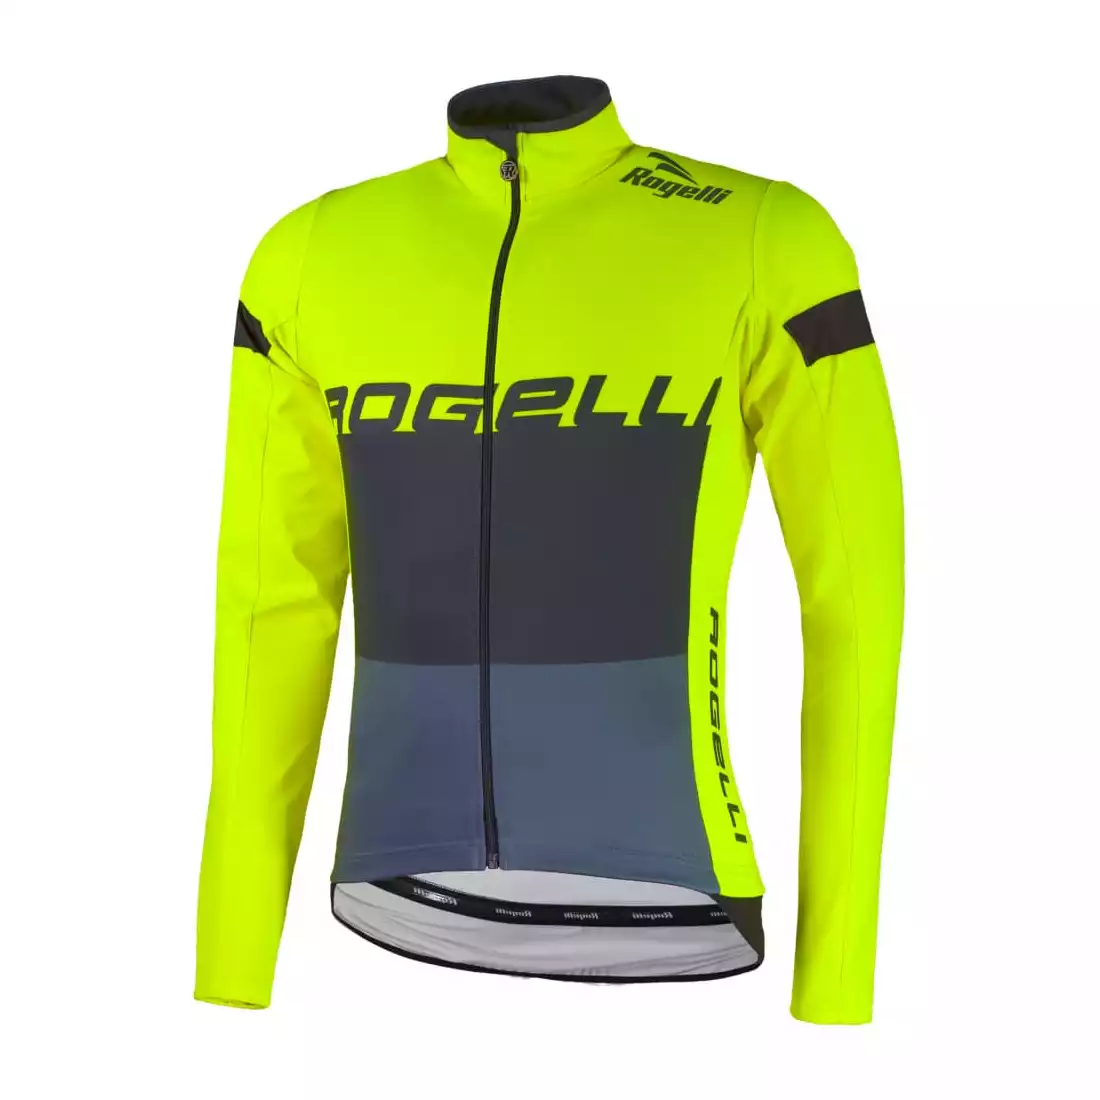 Rogelli HYDRO waterproof men's long sleeve cycling jersey, fluorine-yellow